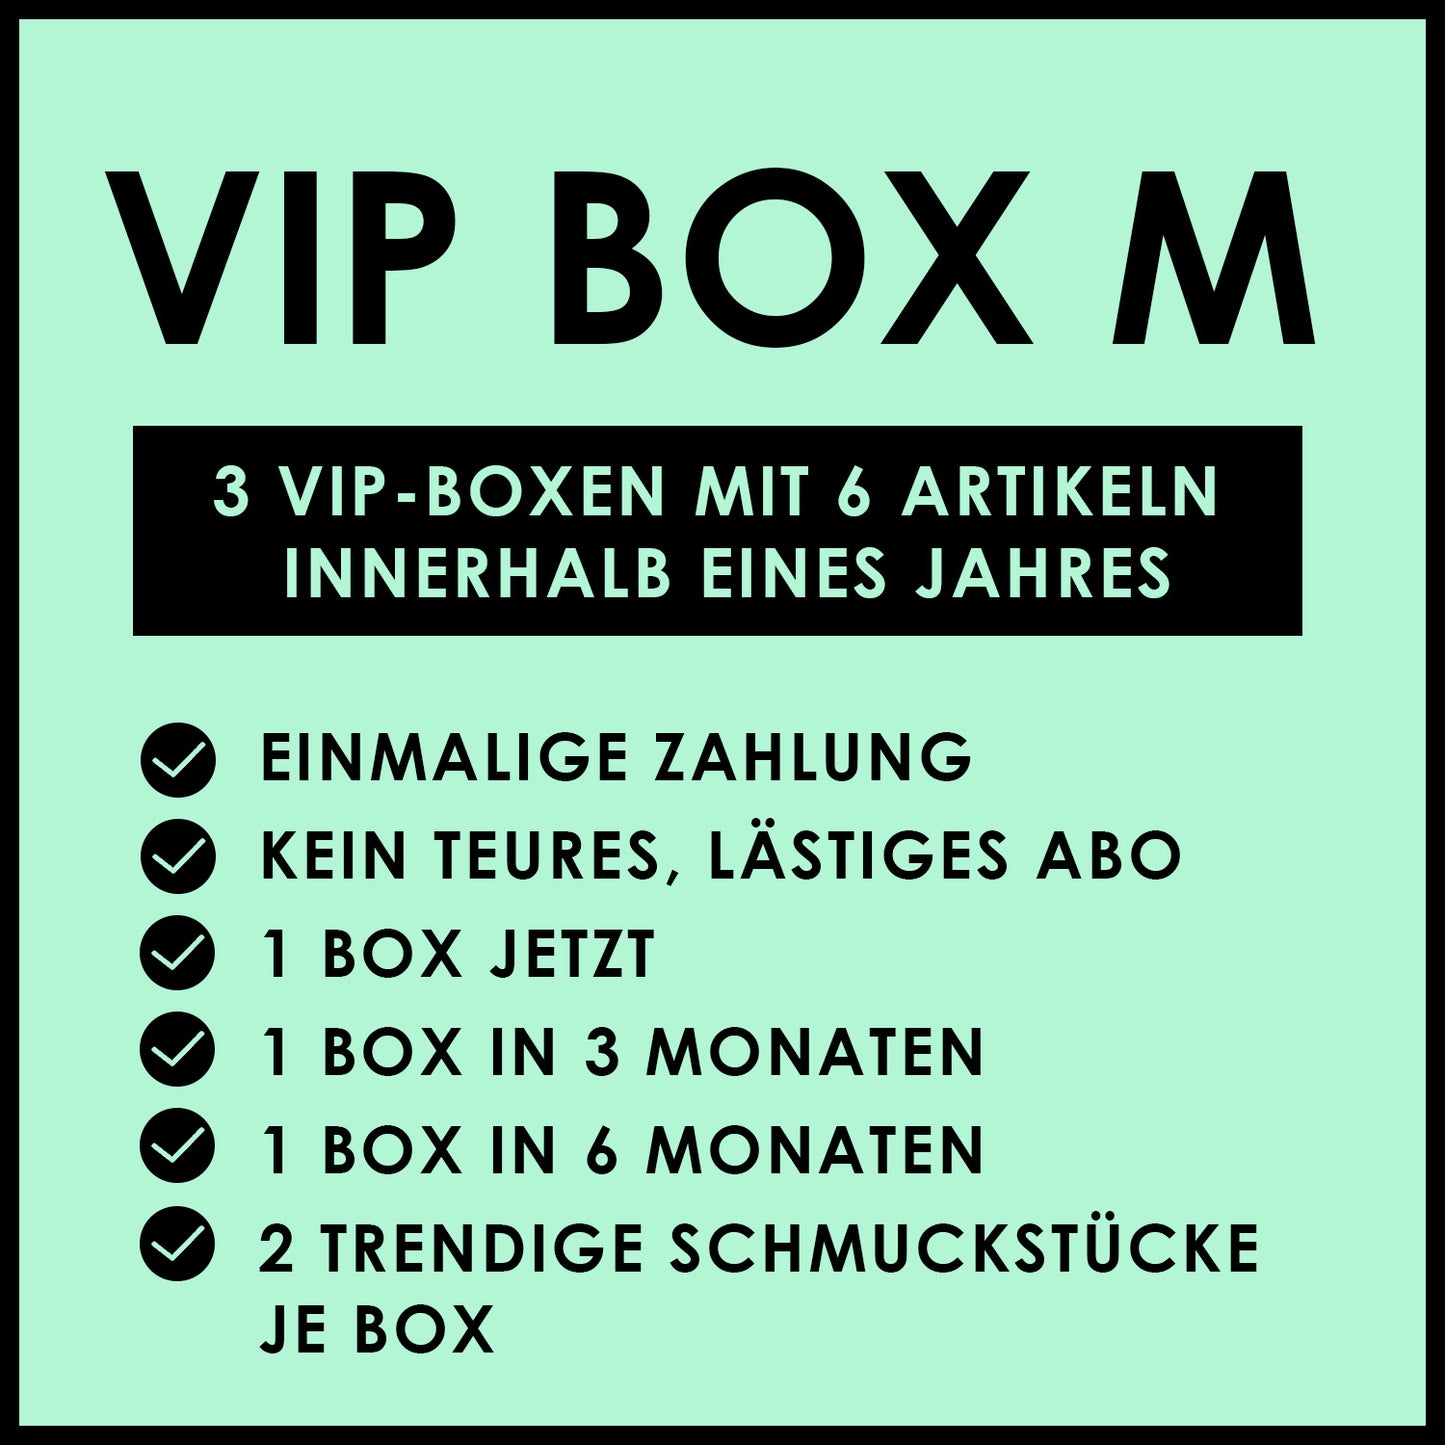 VIP BOX M WOMEN